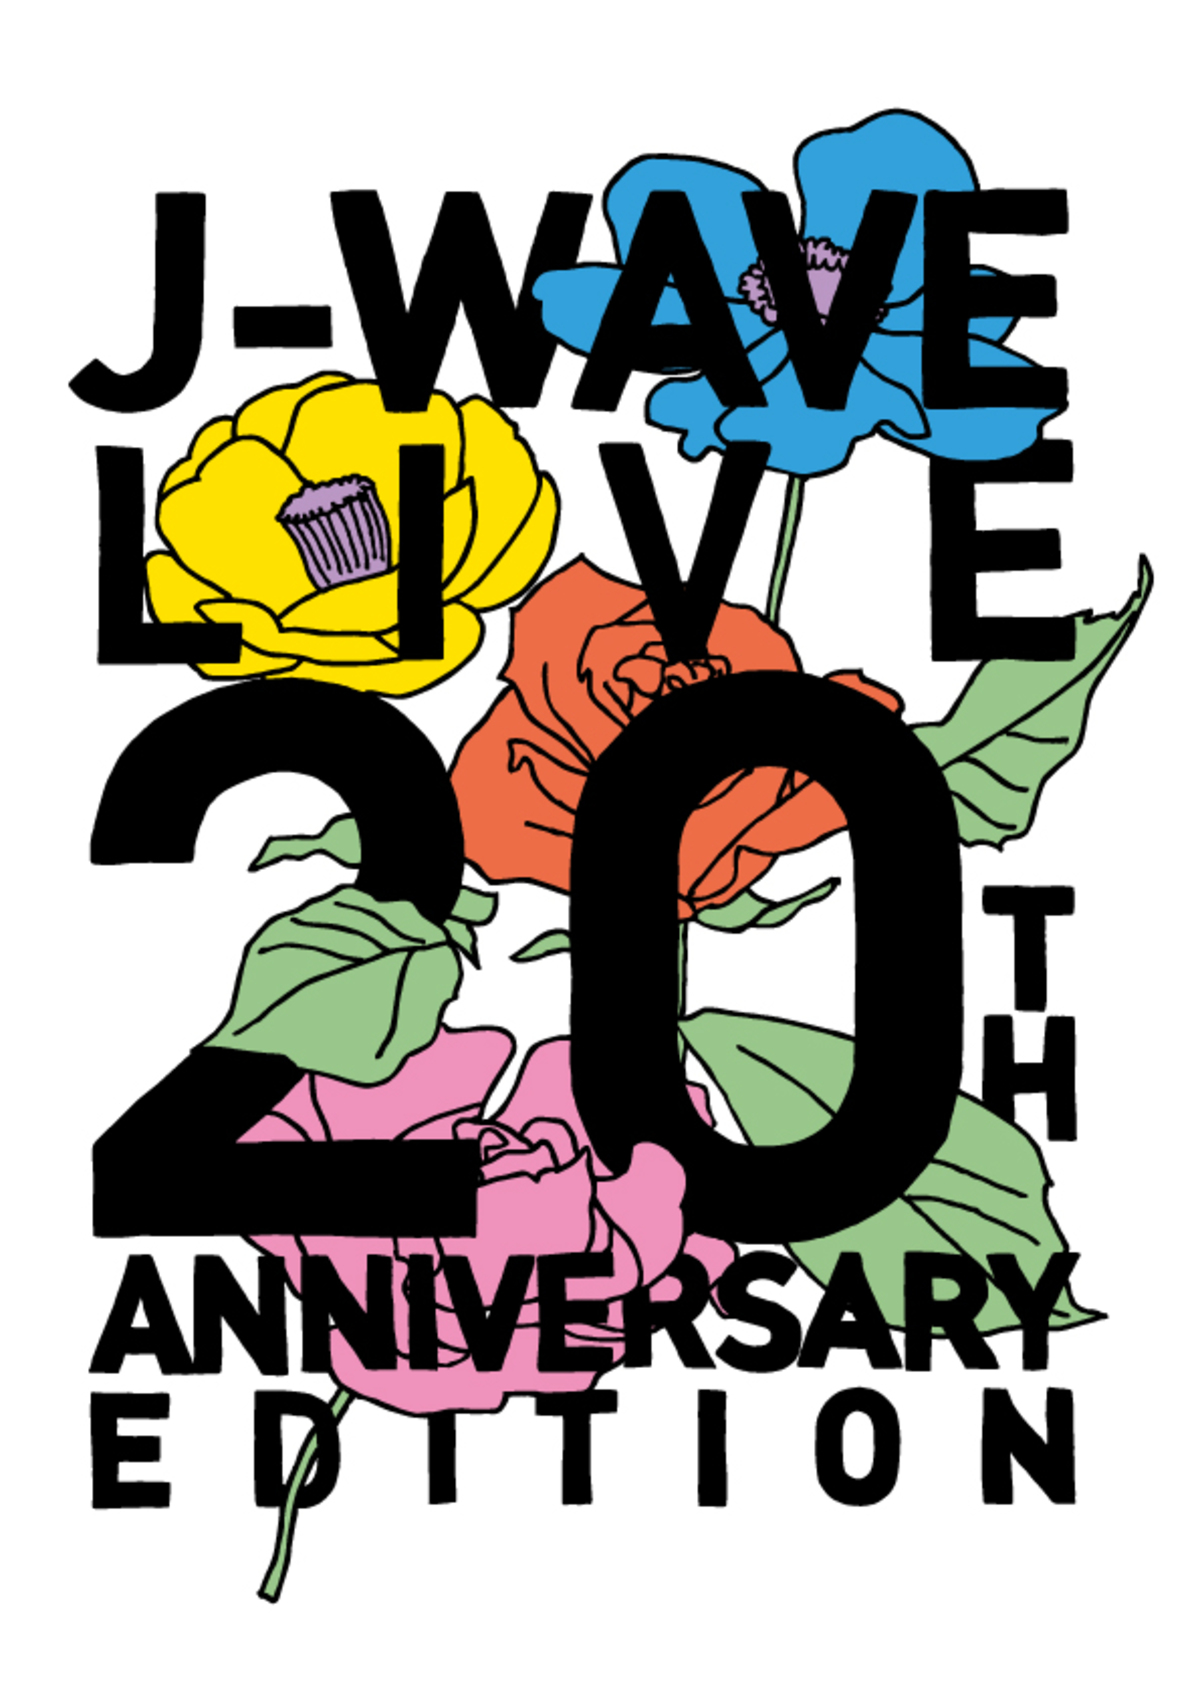 7 13 15横浜アリーナでライヴ イベント J Wave Live th Anniversary Edition 開催 第1弾出演者としてあいみょん Shishamo Nulbarichら発表